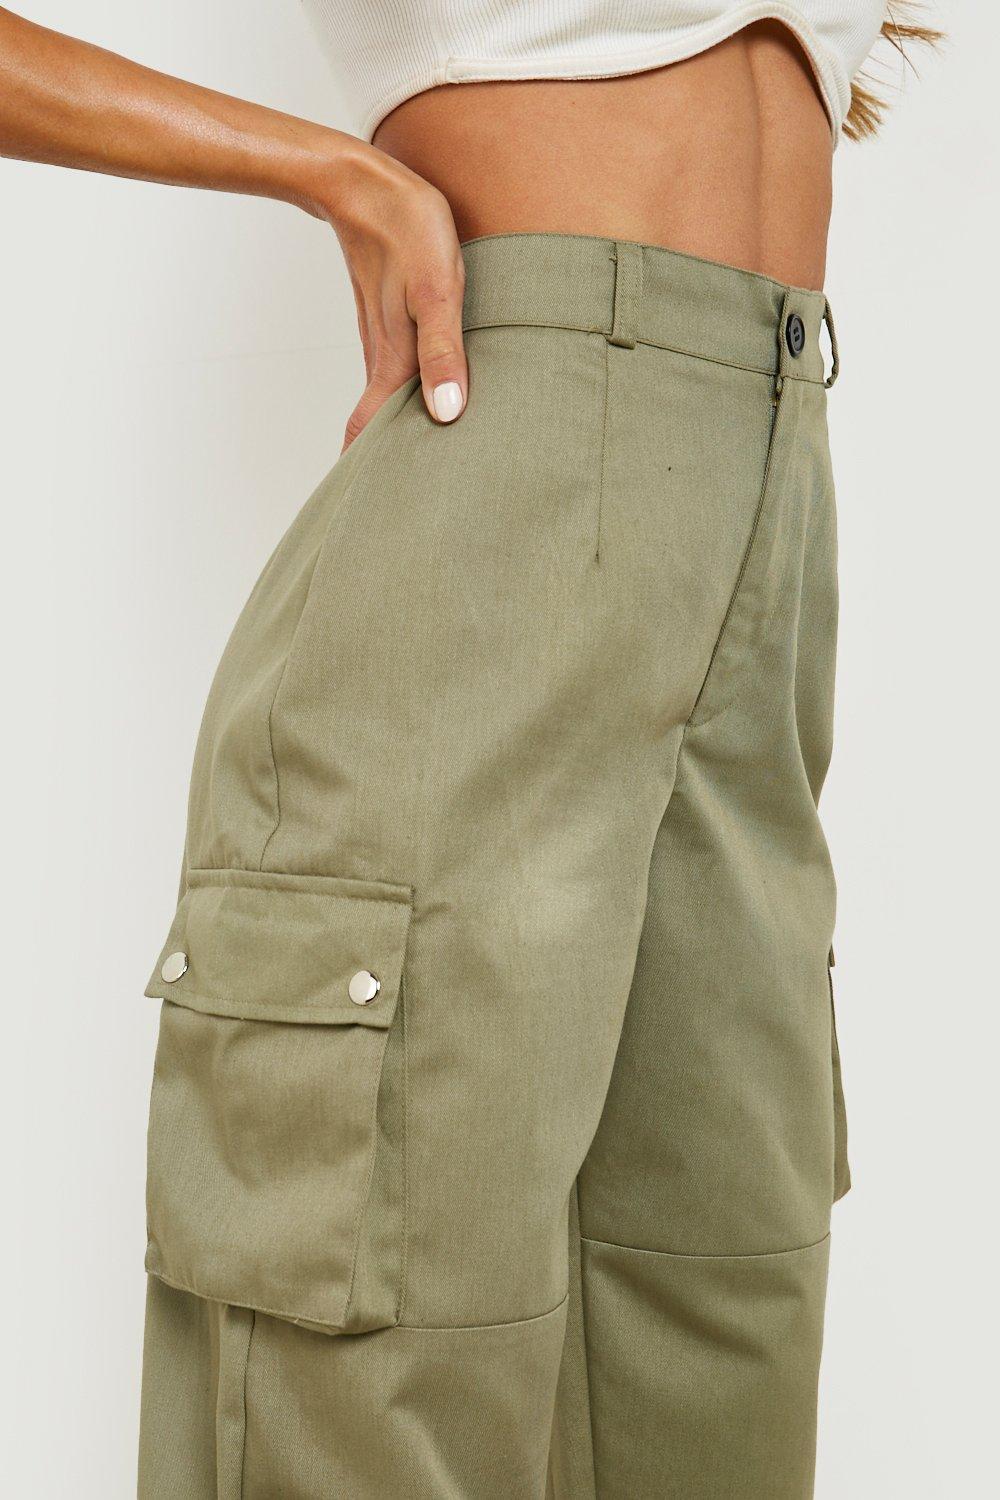 Women's High Waist Woven Pocket Cargo Trousers